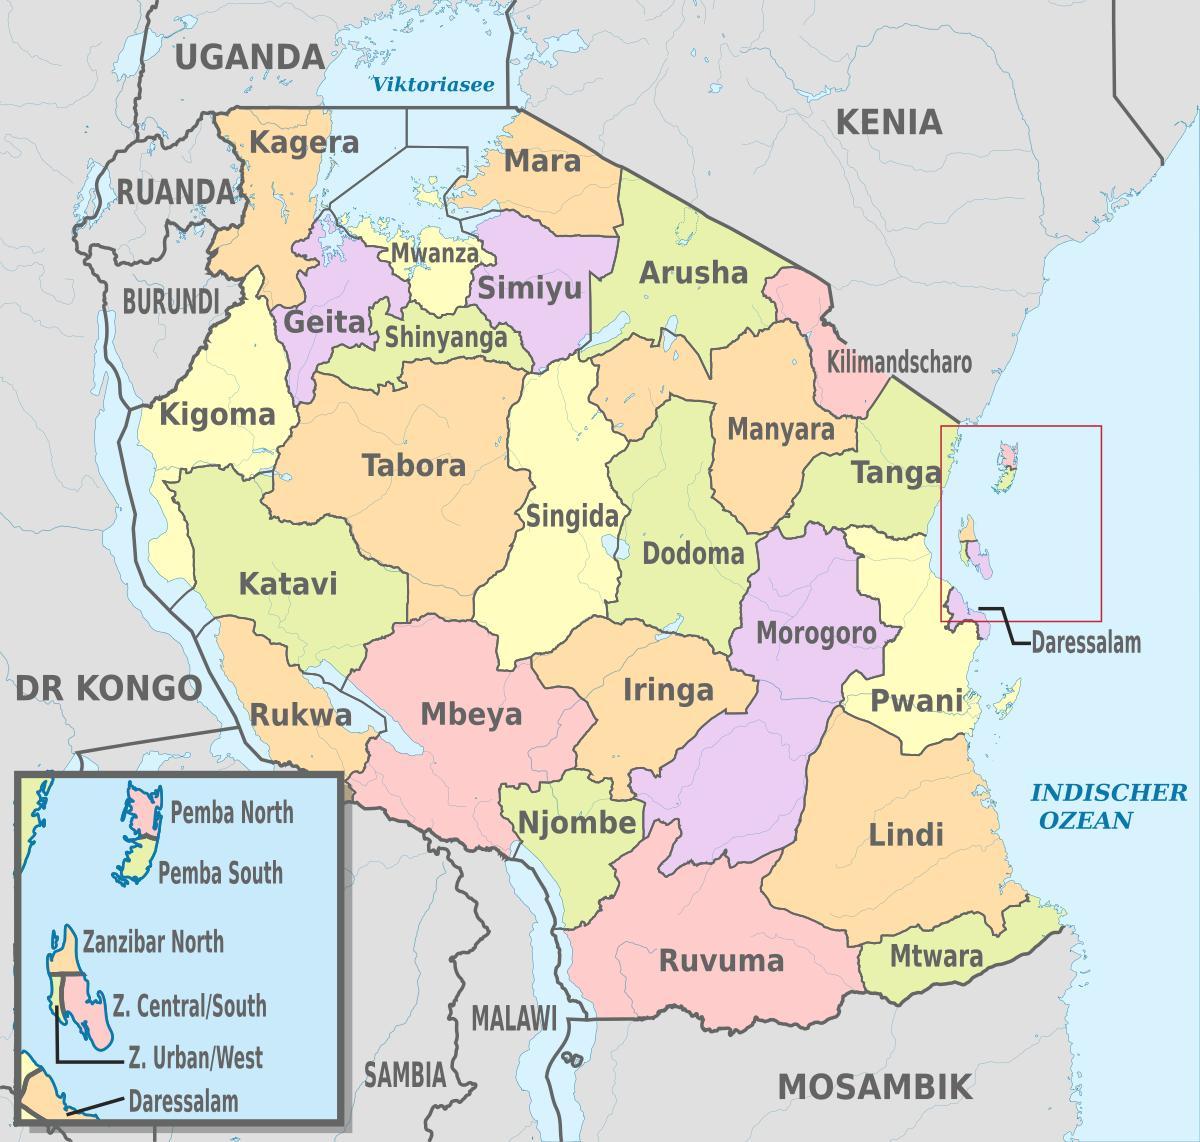 mappa della tanzania, mostrando regioni e distretti